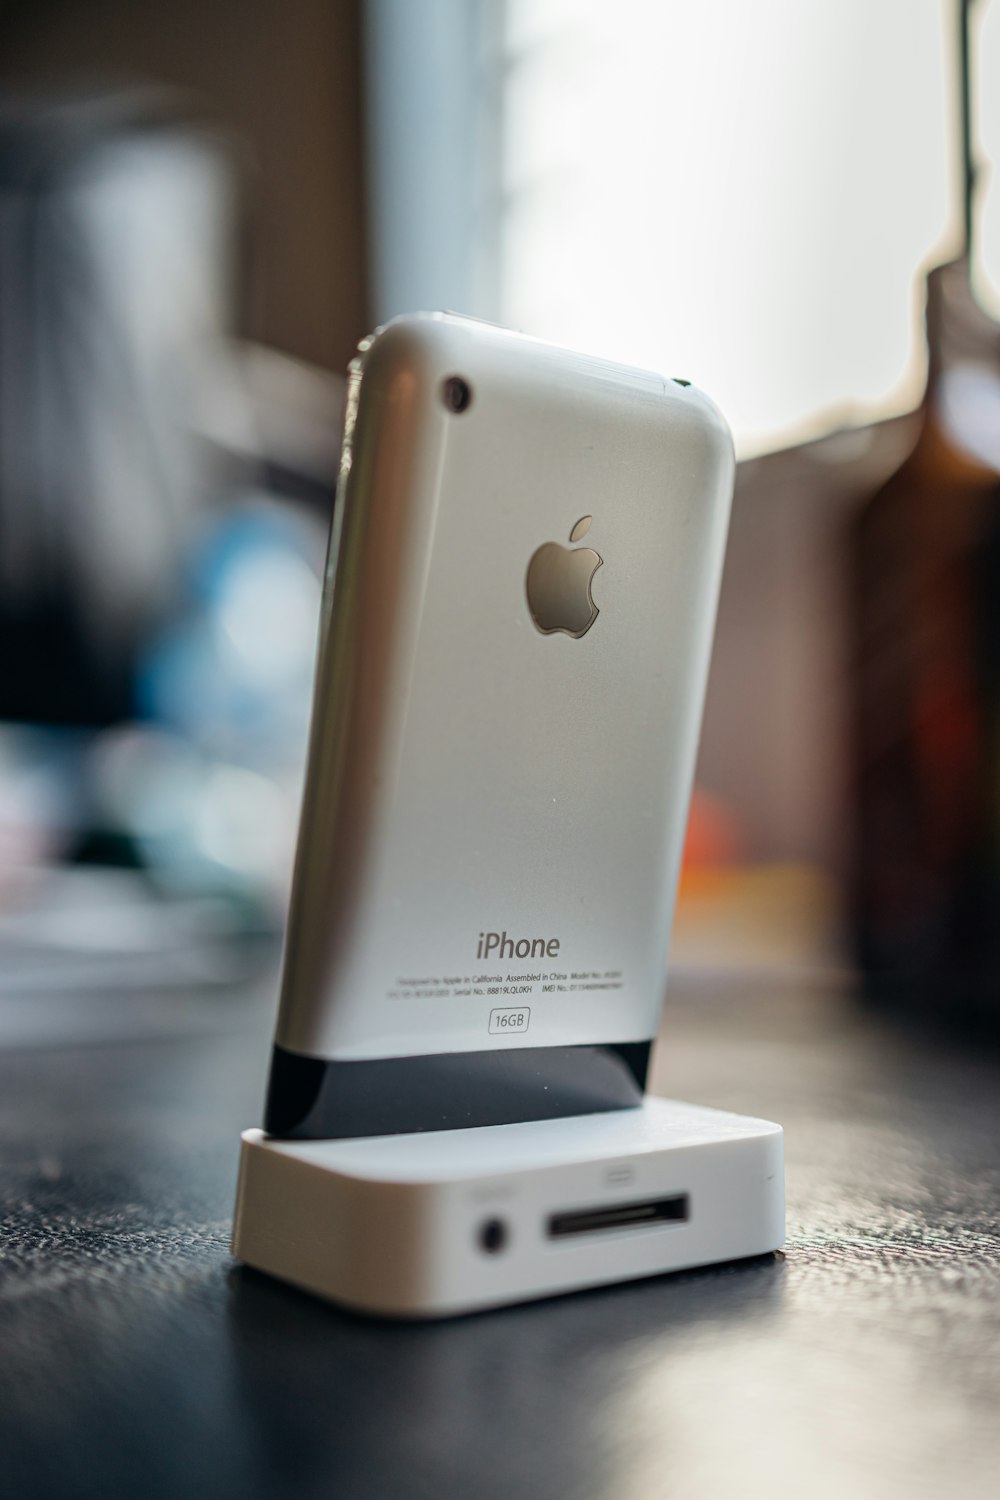 Silber iPhone 6 auf weißer Box